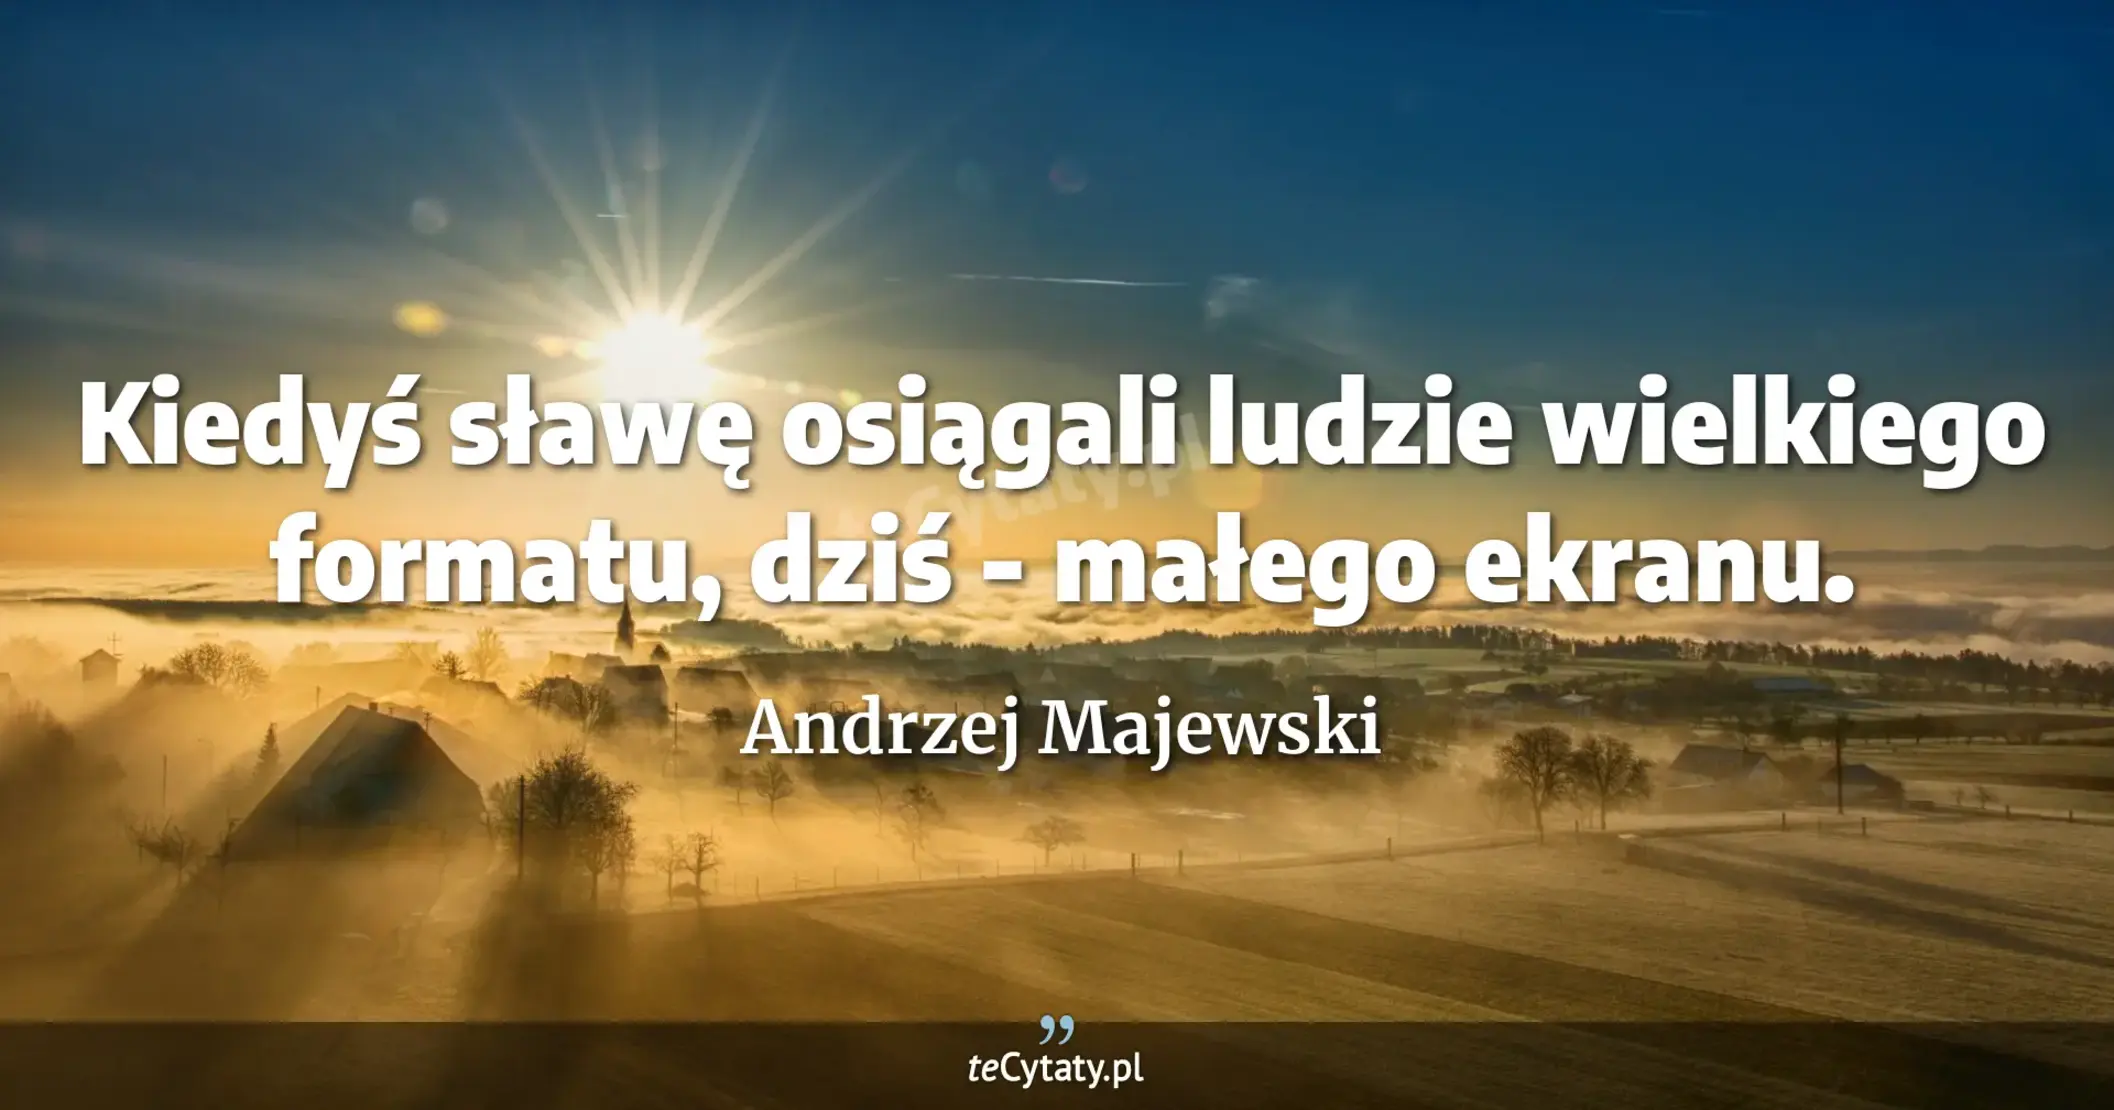 Kiedyś sławę osiągali ludzie wielkiego formatu, dziś - małego ekranu. - Andrzej Majewski